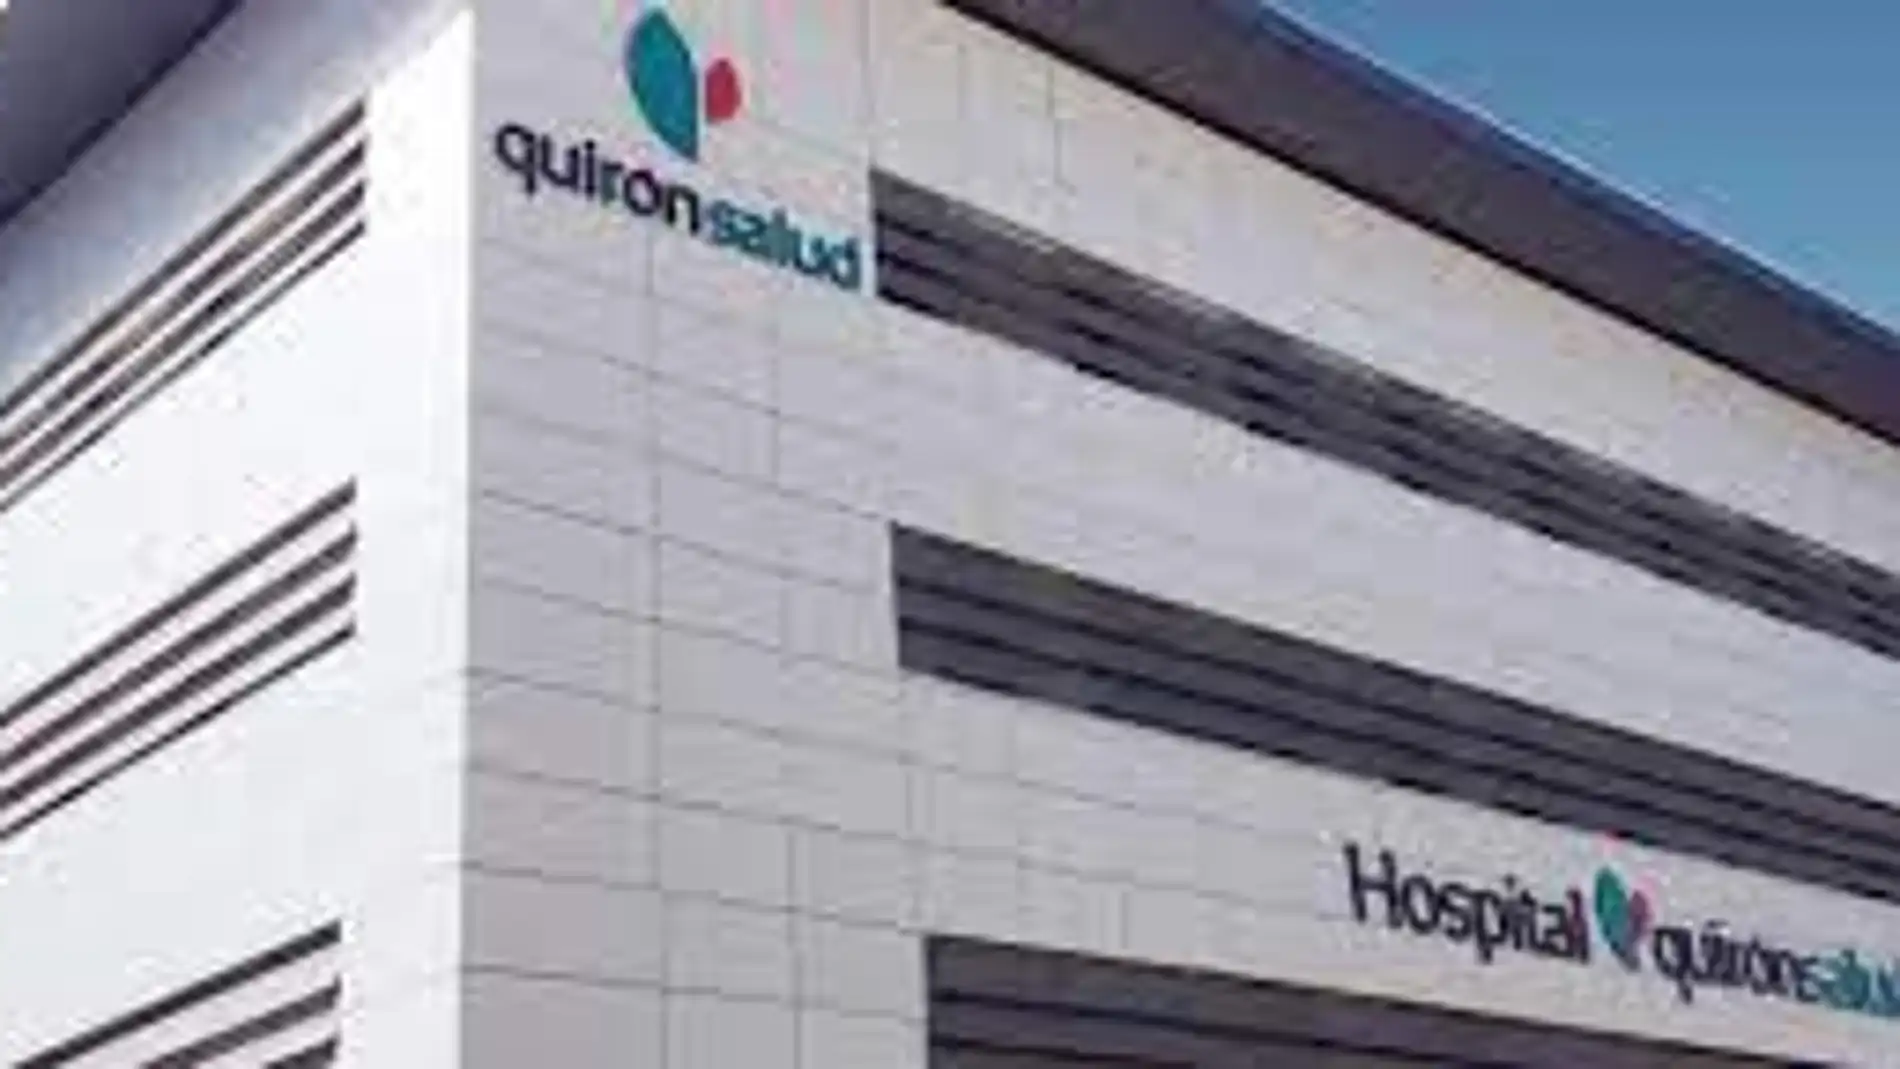 Los hospitales Quirónsalud de Sevilla, servicio médico oficial de la gala 